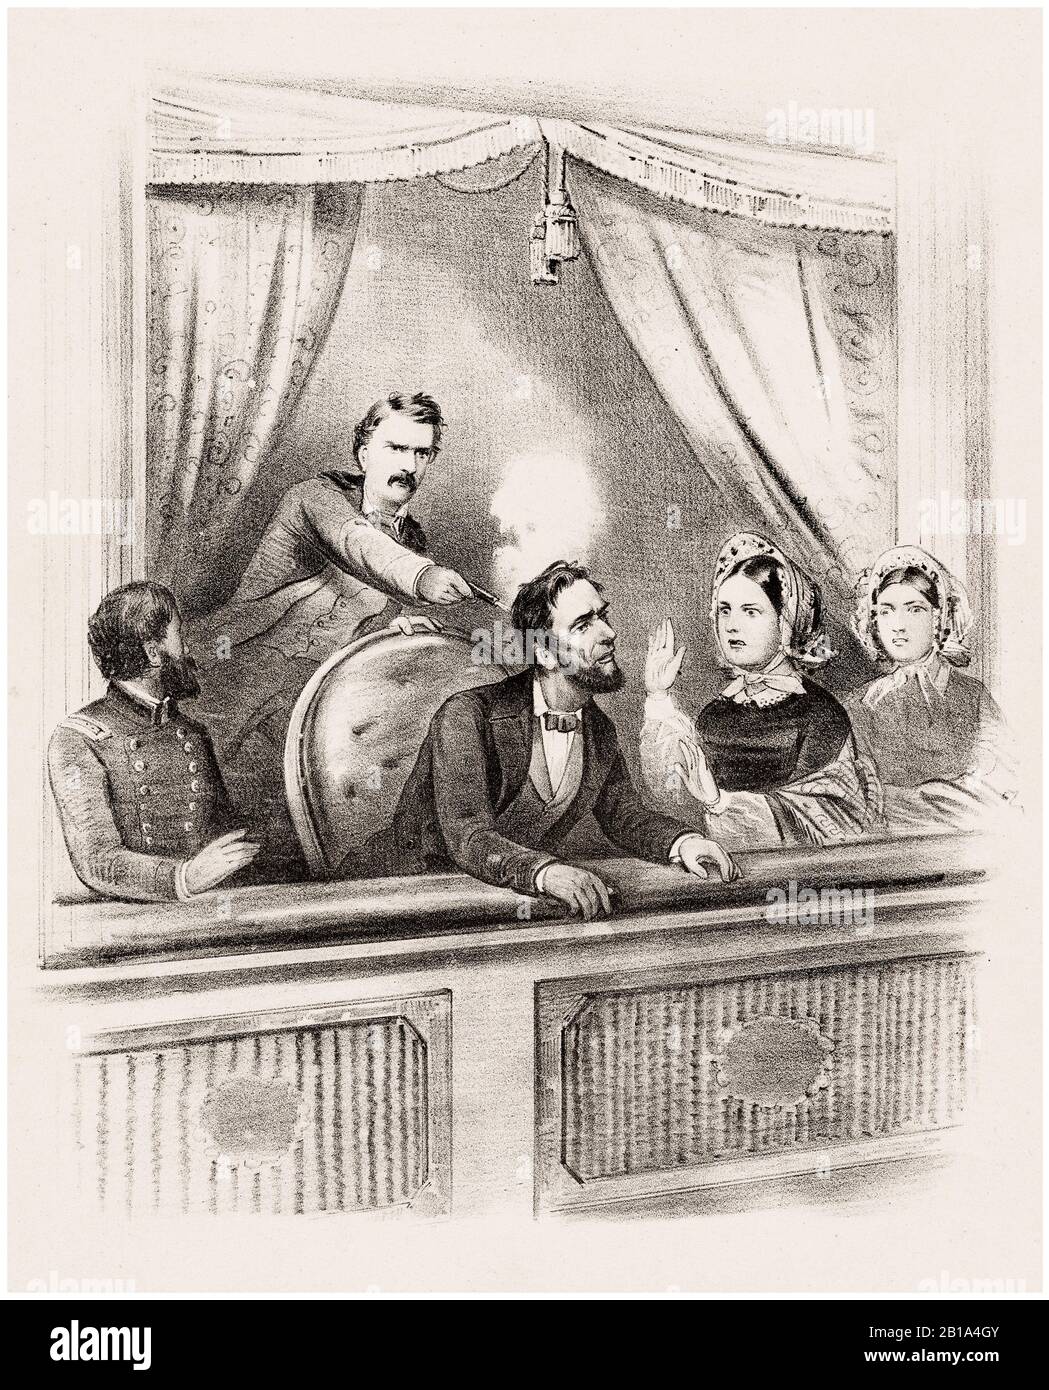 Assassinat du président Abraham Lincoln, 14 avril 1865 au théâtre Ford, imprimé par un artiste inconnu, vers 1865 Banque D'Images